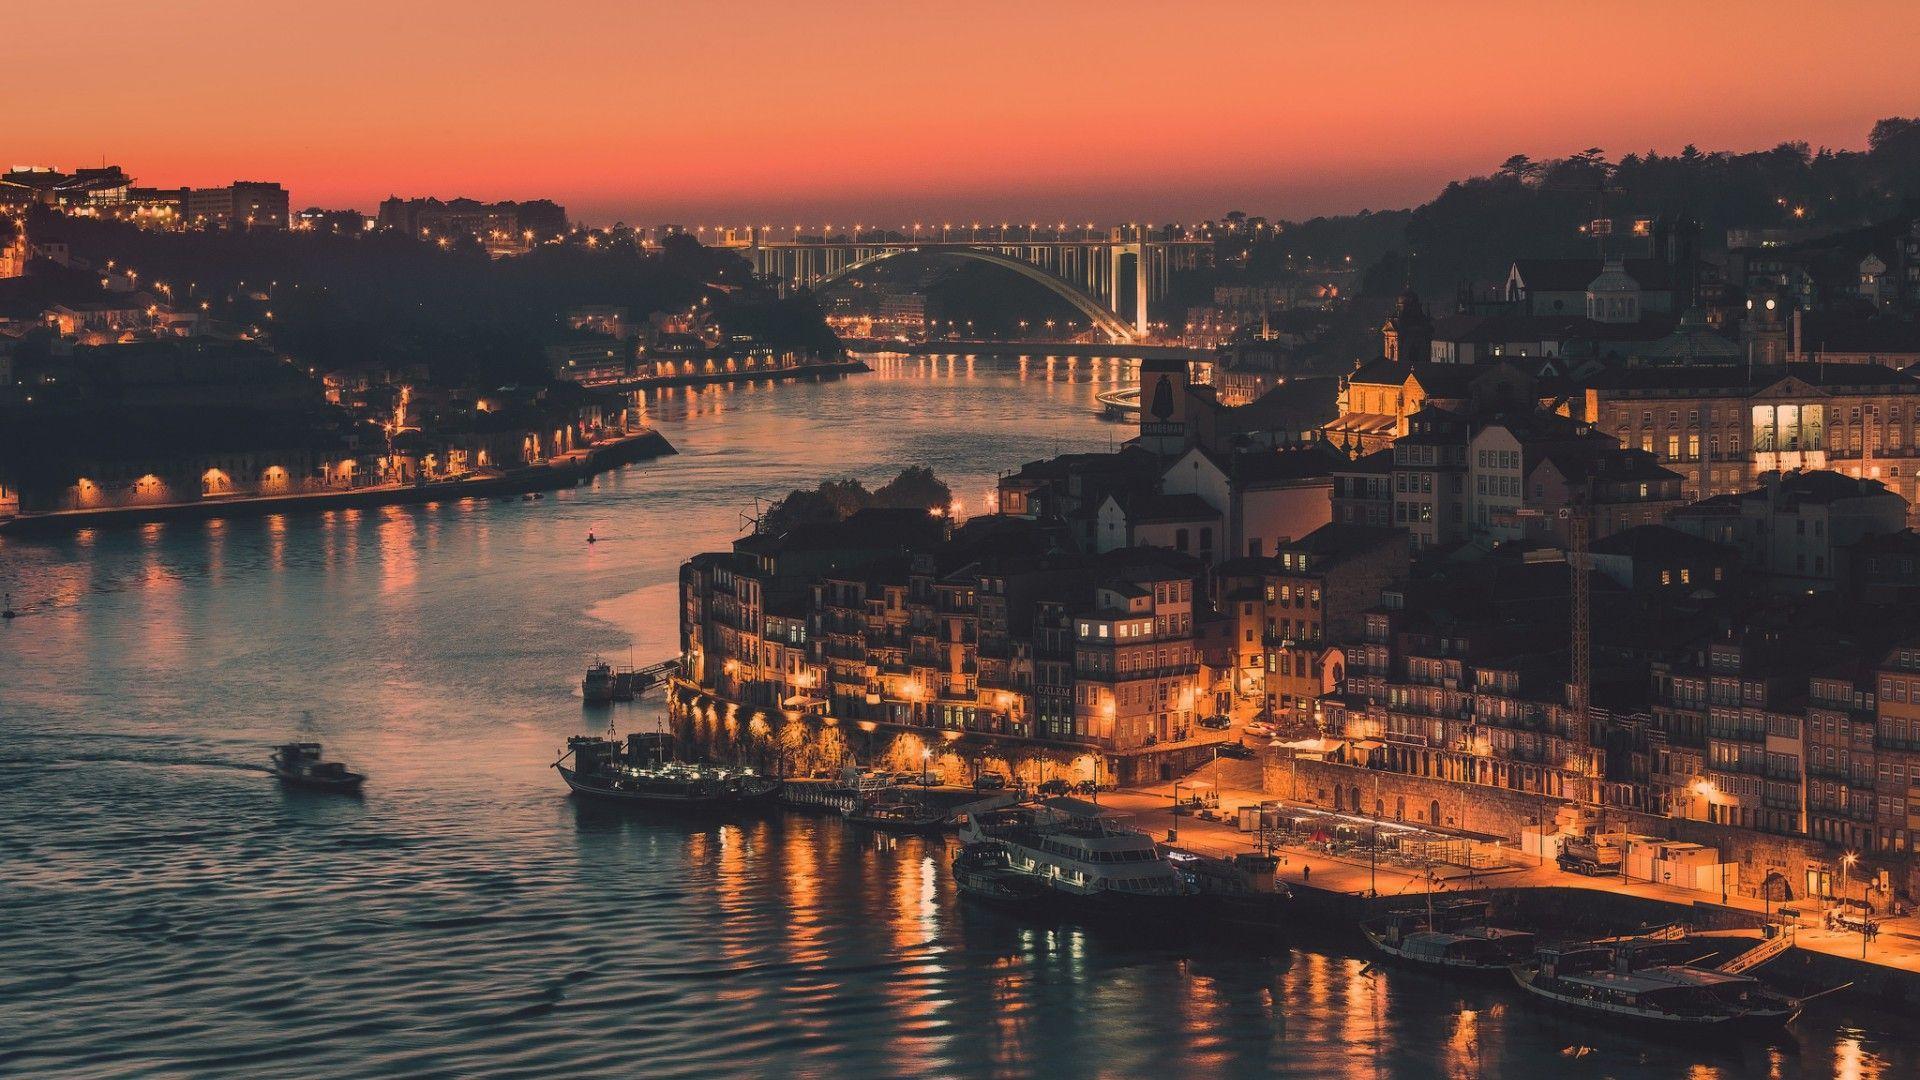 Portugal, the city of Porto 1920x1080 (1080p)